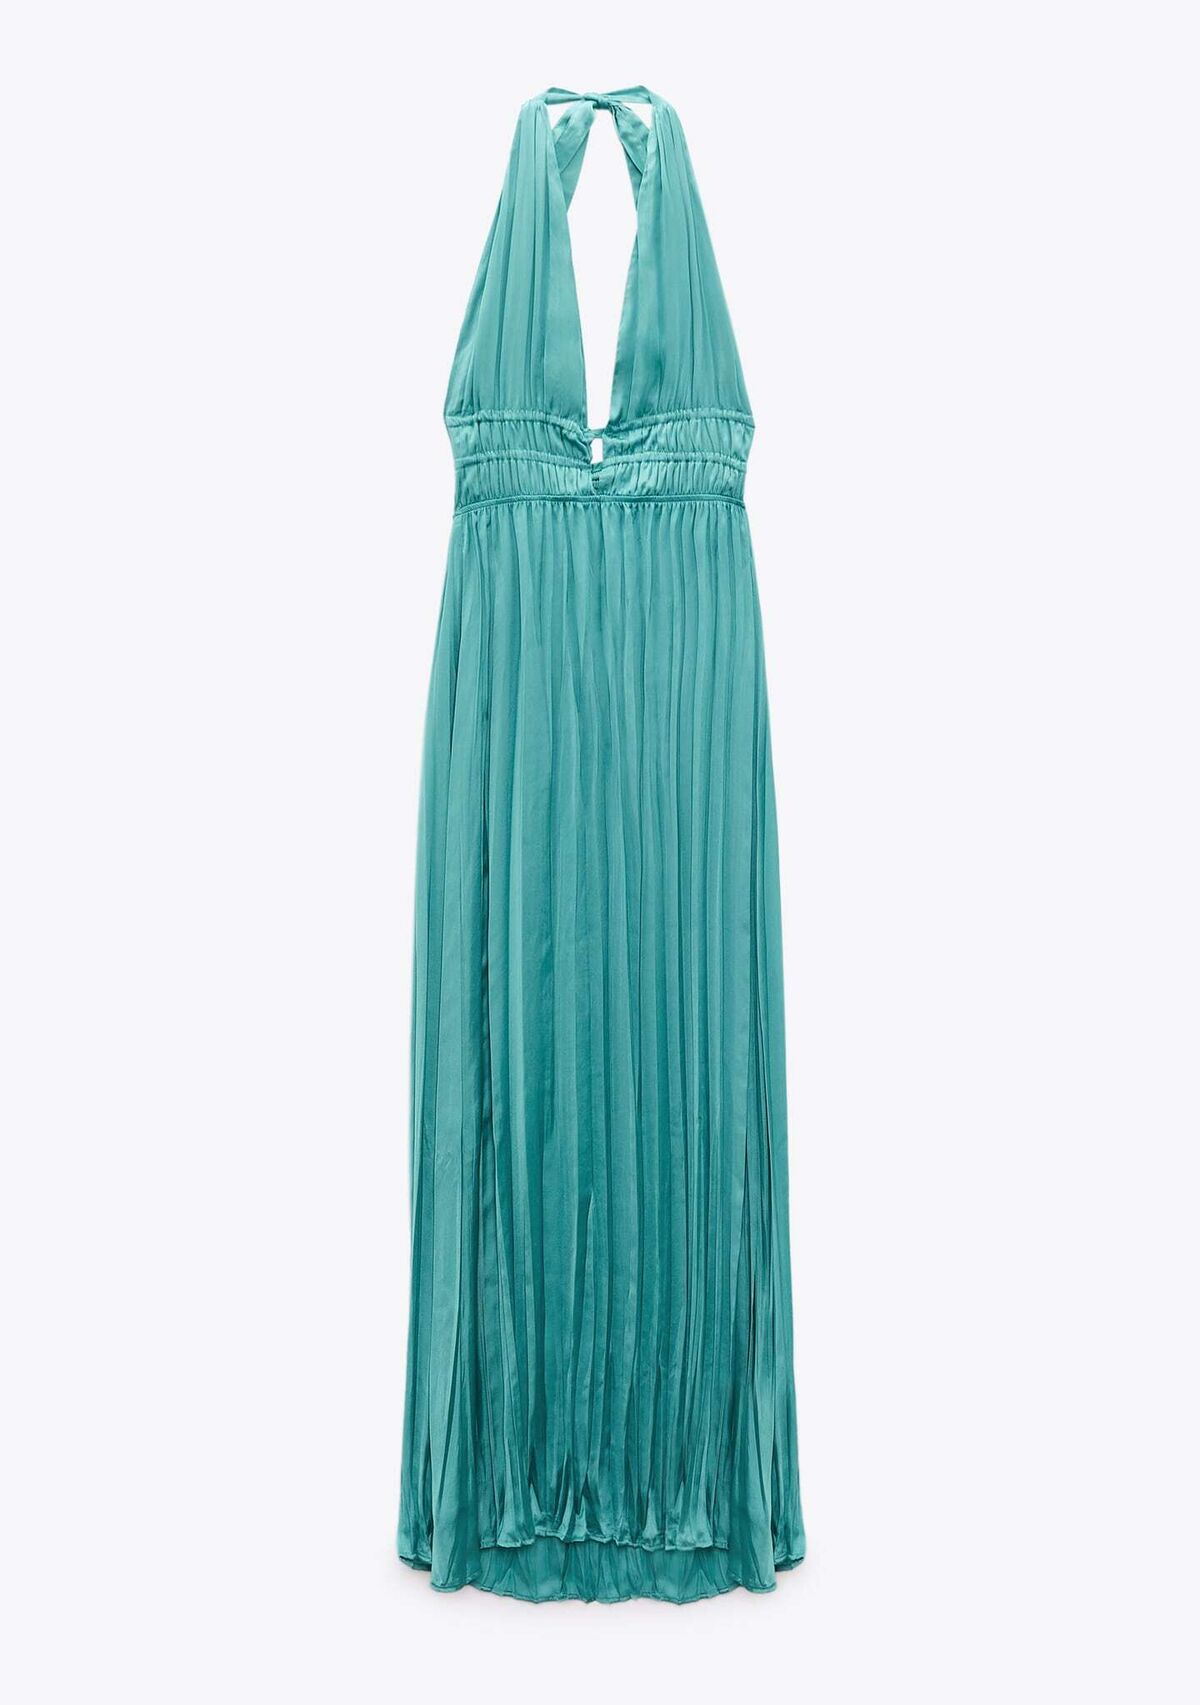 La invitada perfecta lleva este vestido turquesa de Zara de sólo 30 euros